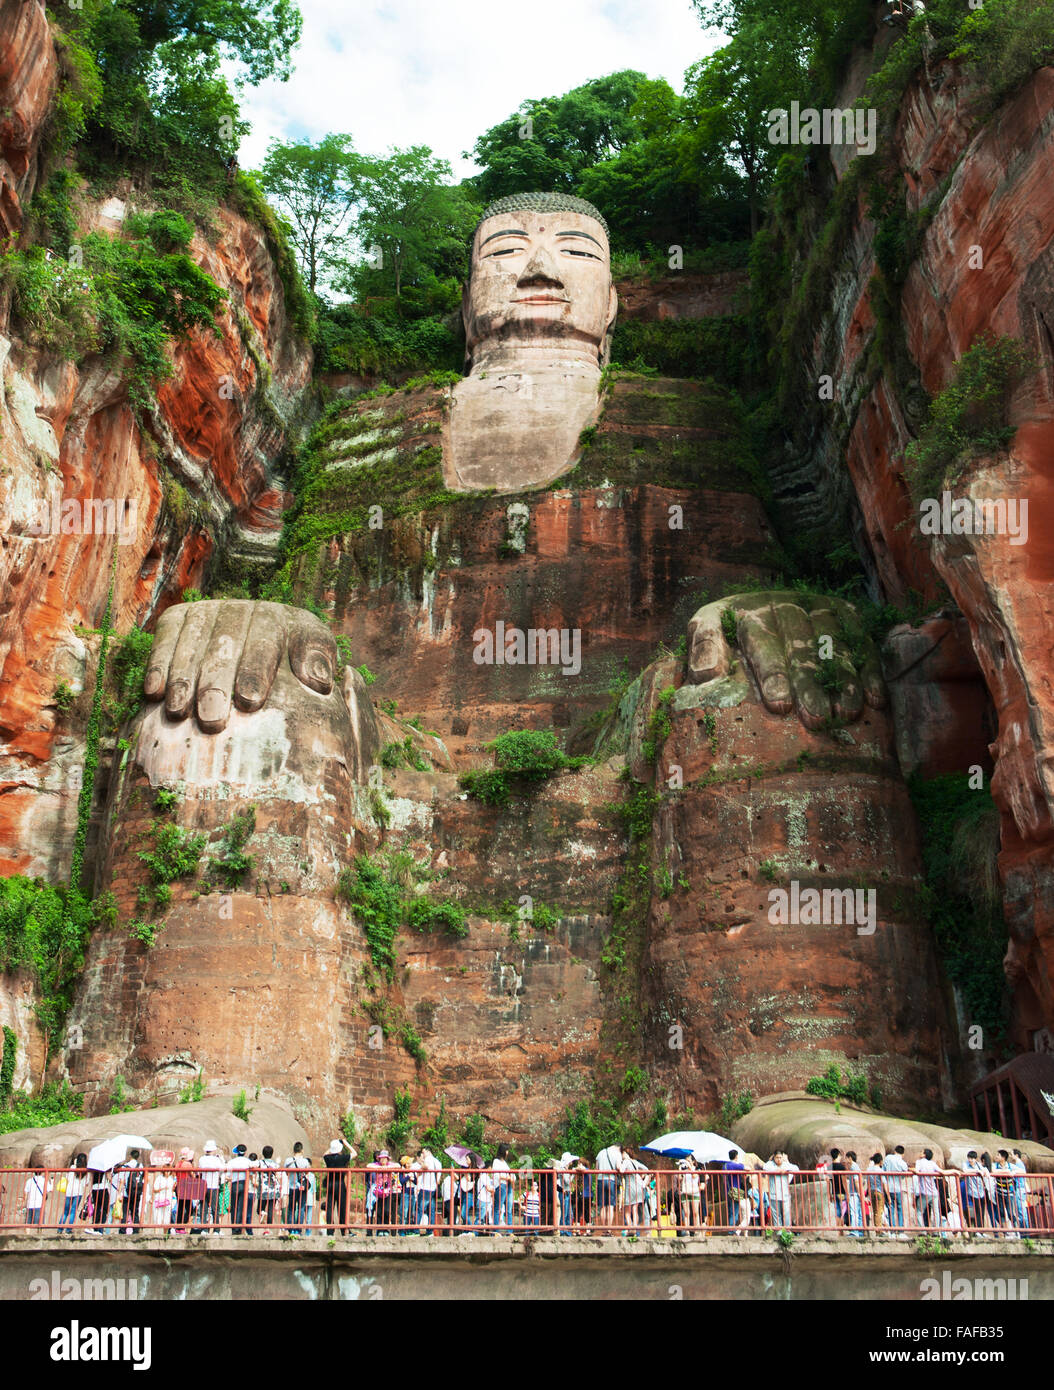 The Grand Buddha Of Leshan, China. Unesco World Heritage site Stock Photo